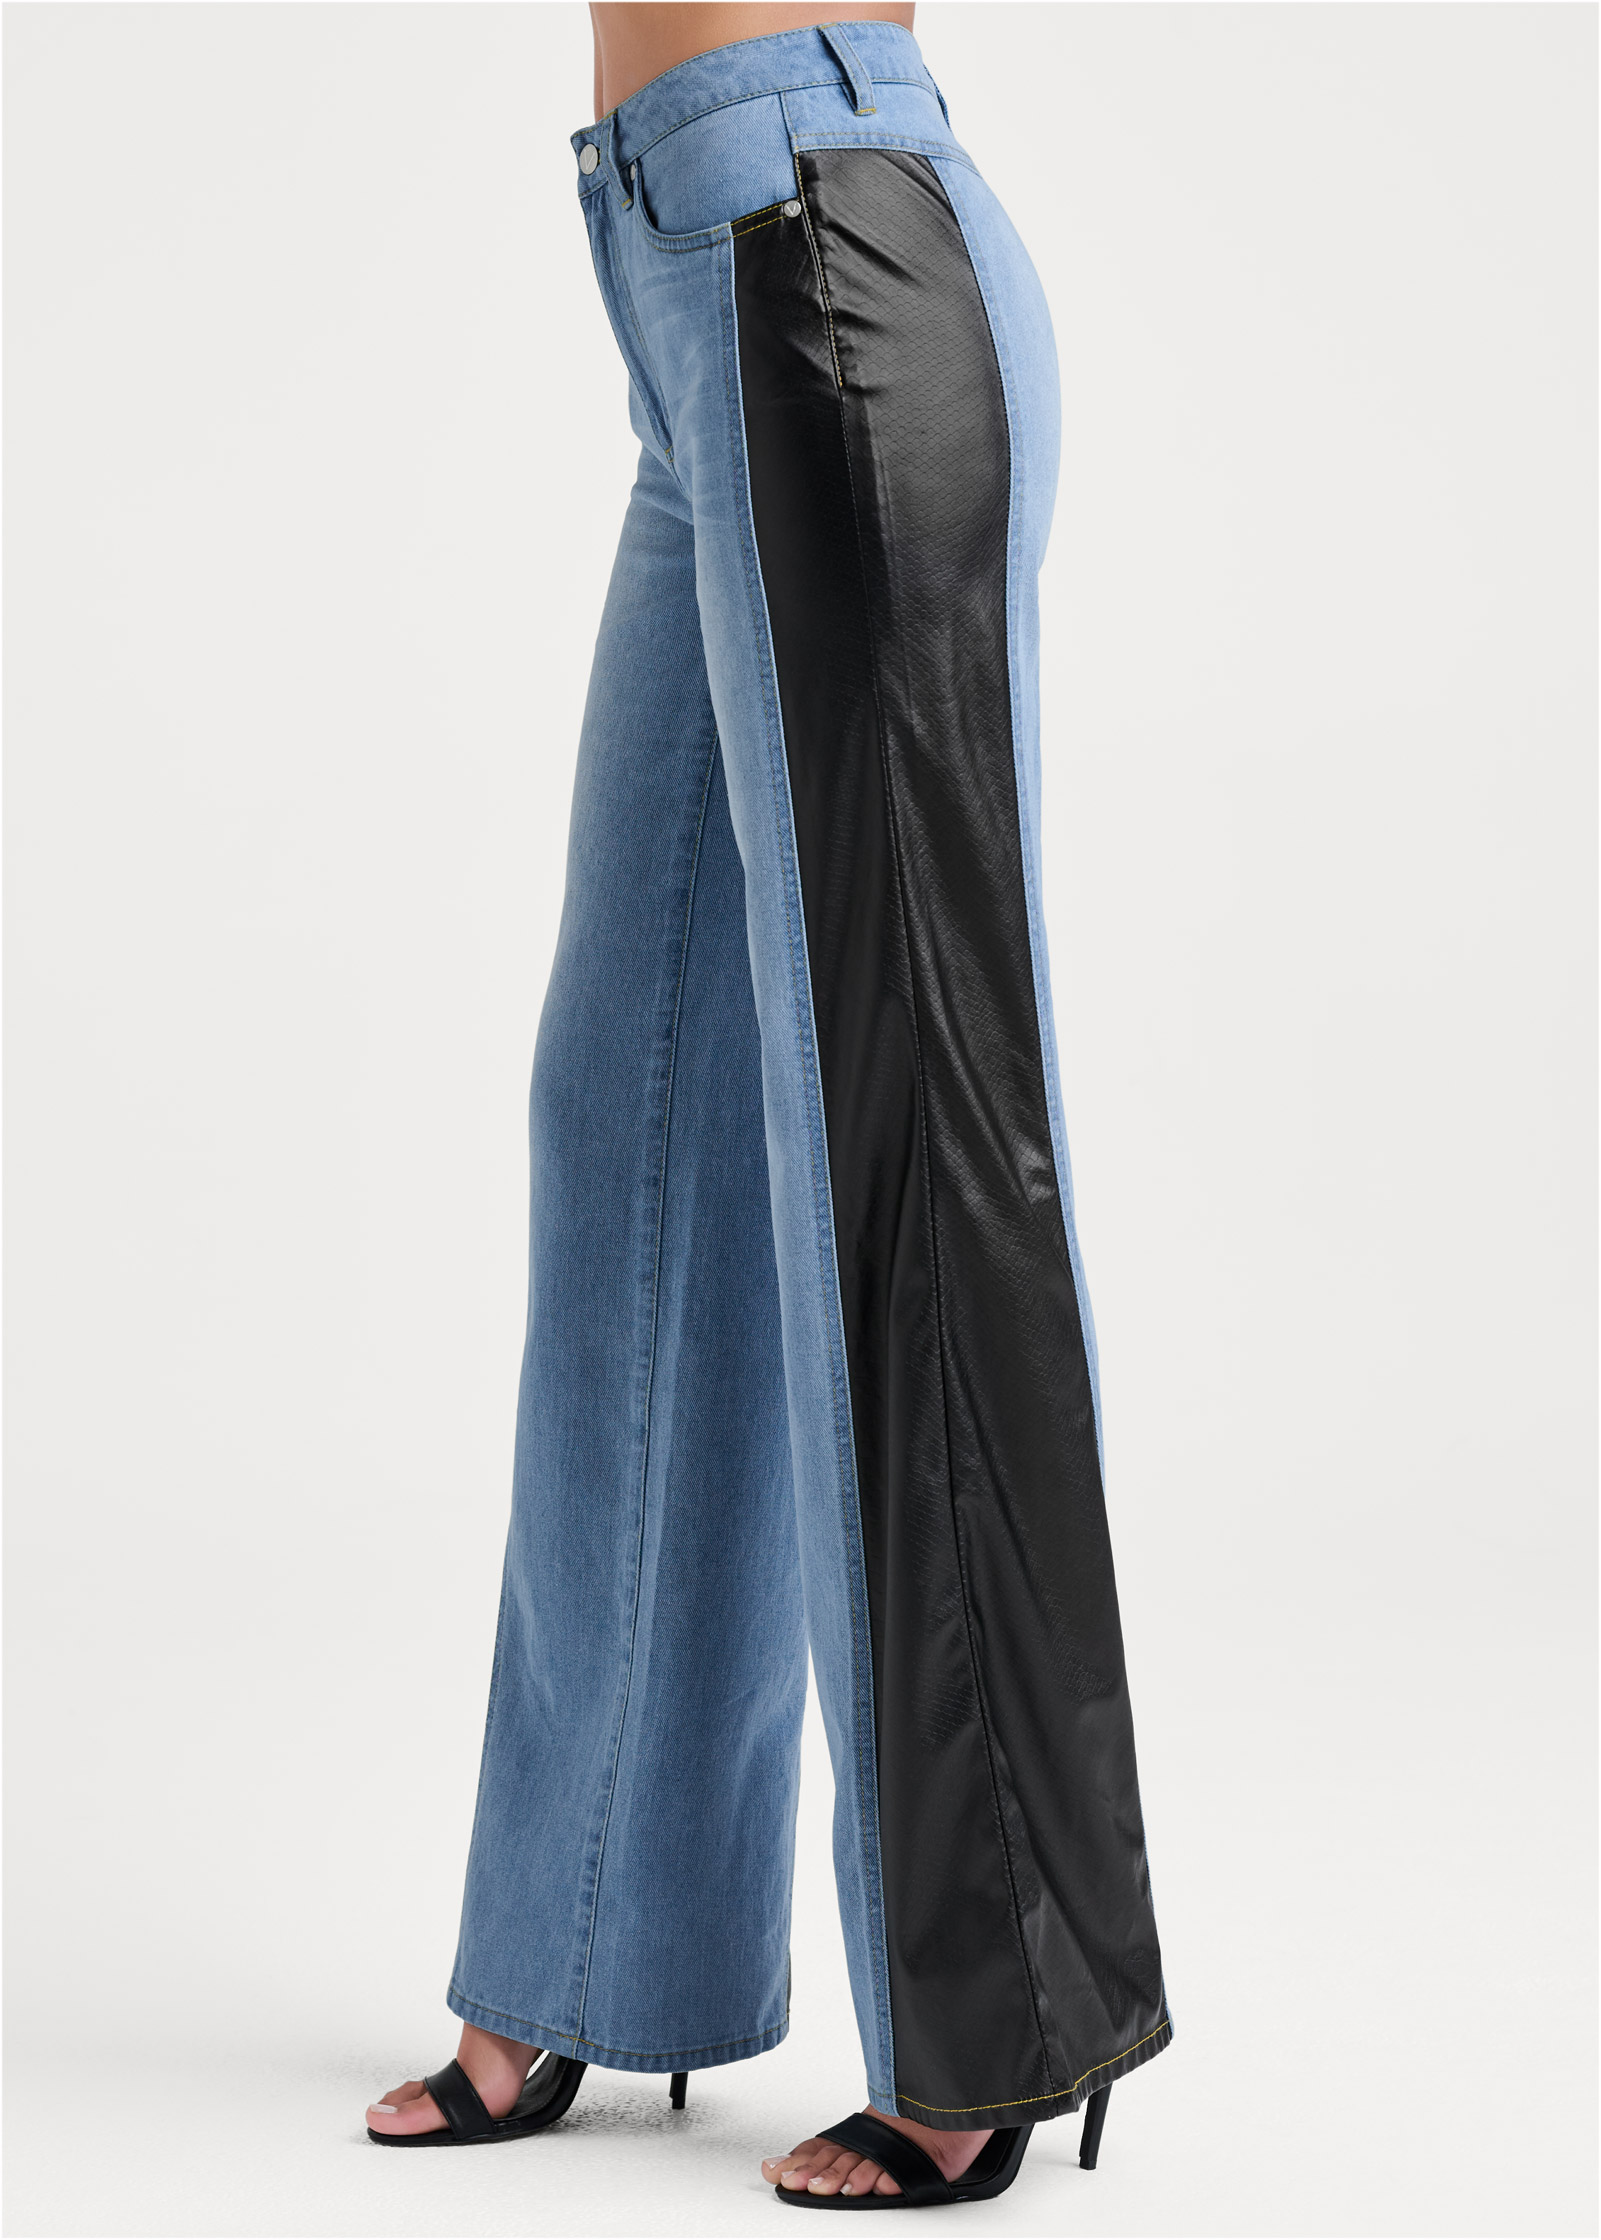 New Vintage Leather Jeans in Light Wash & Black - Denim | VENUS